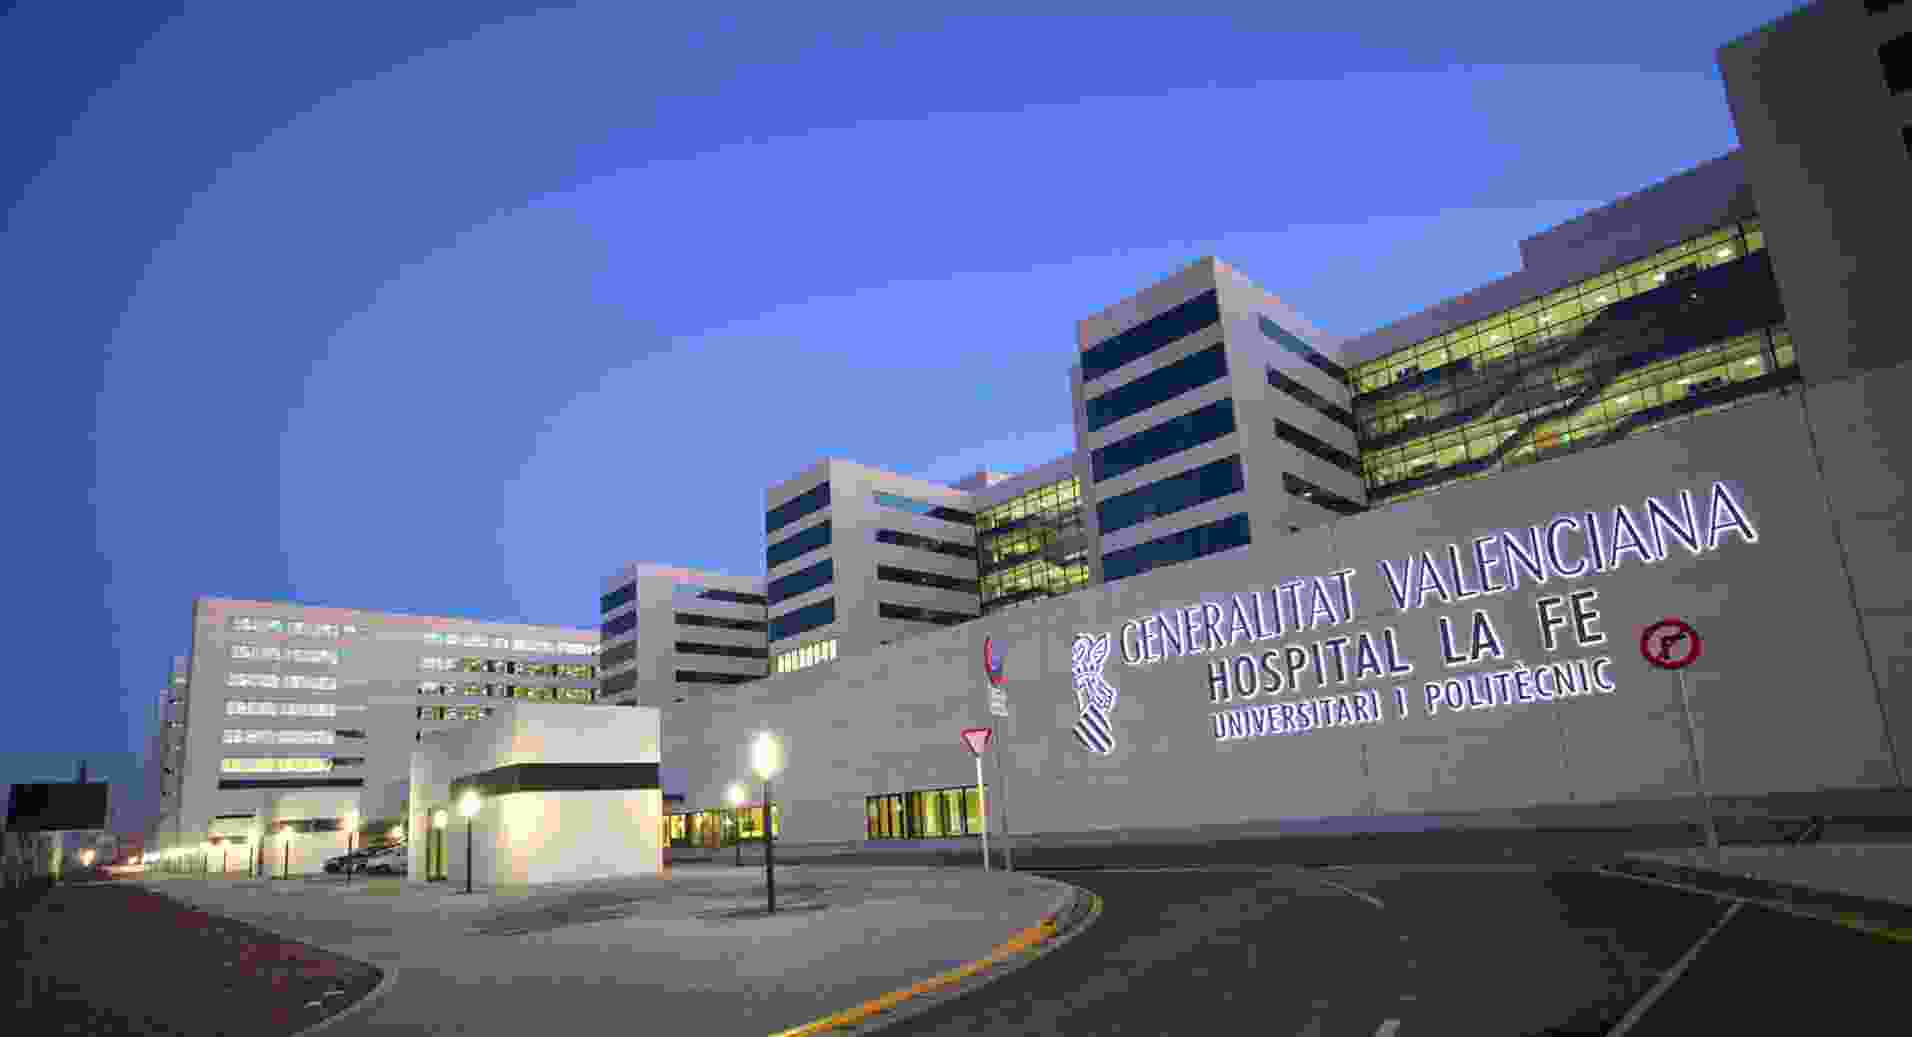 La Fe Hospital